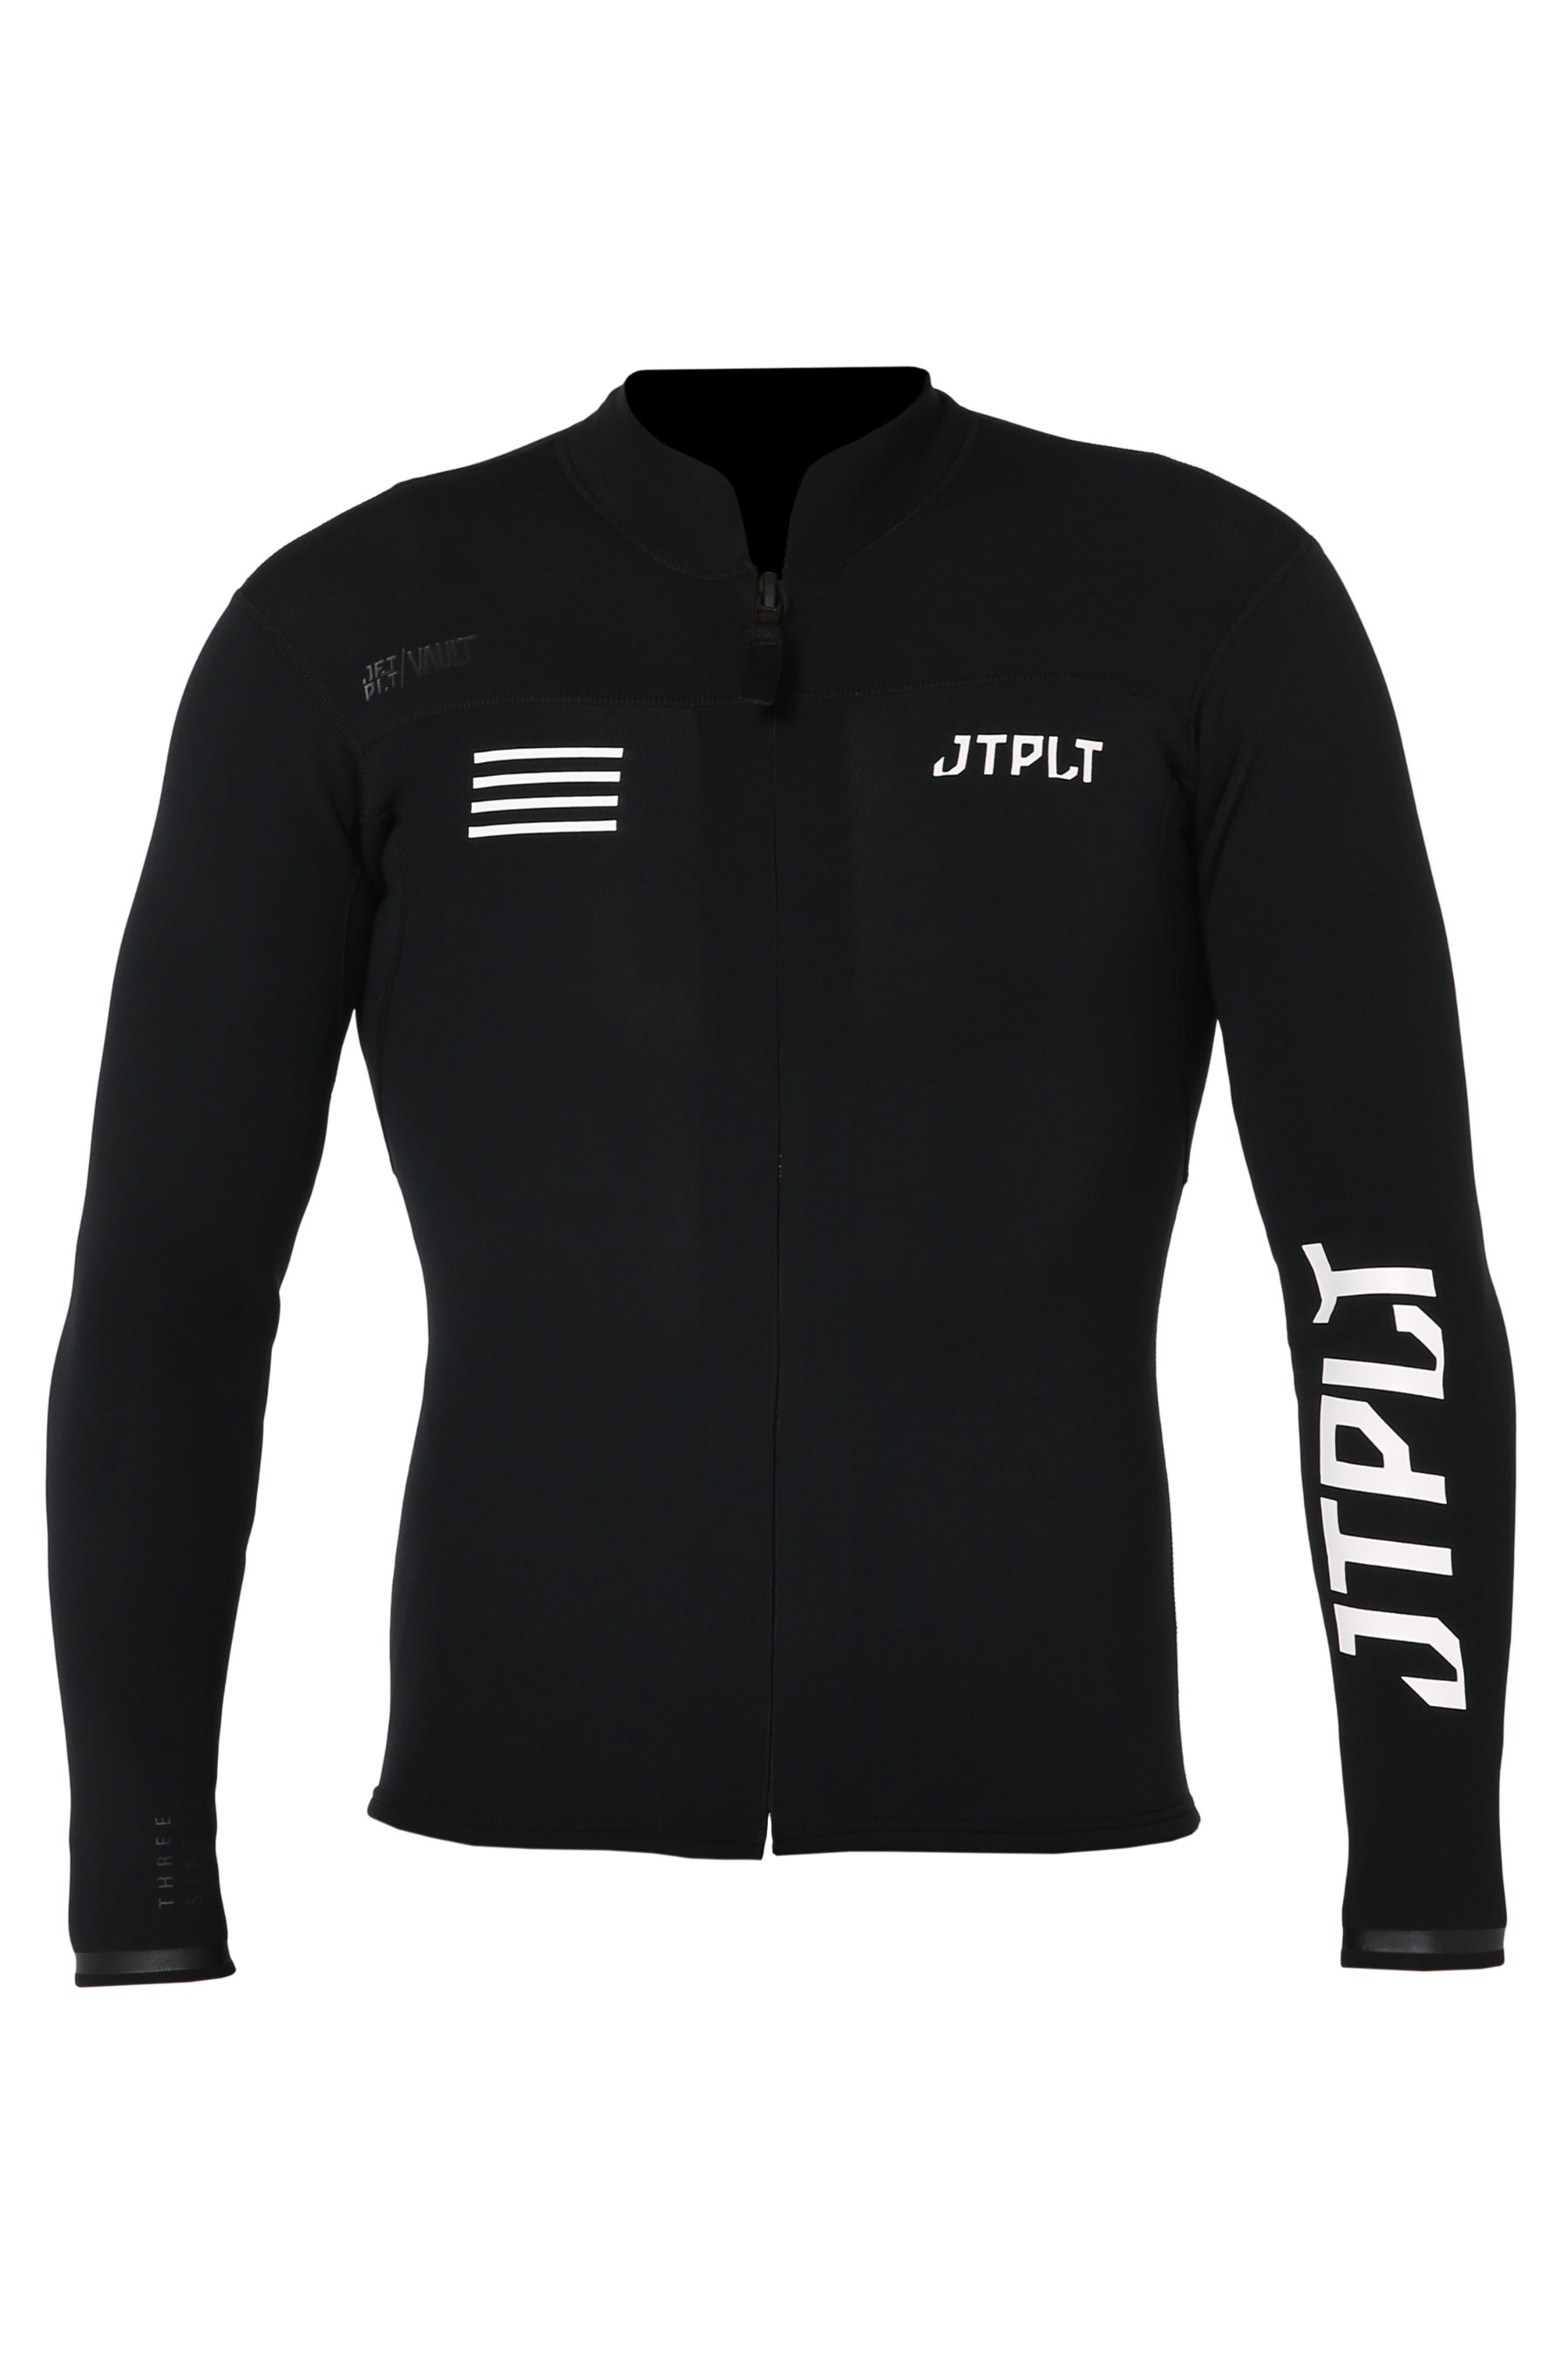 Jetpilot Rx Vault Mens Race Jacket Black/White